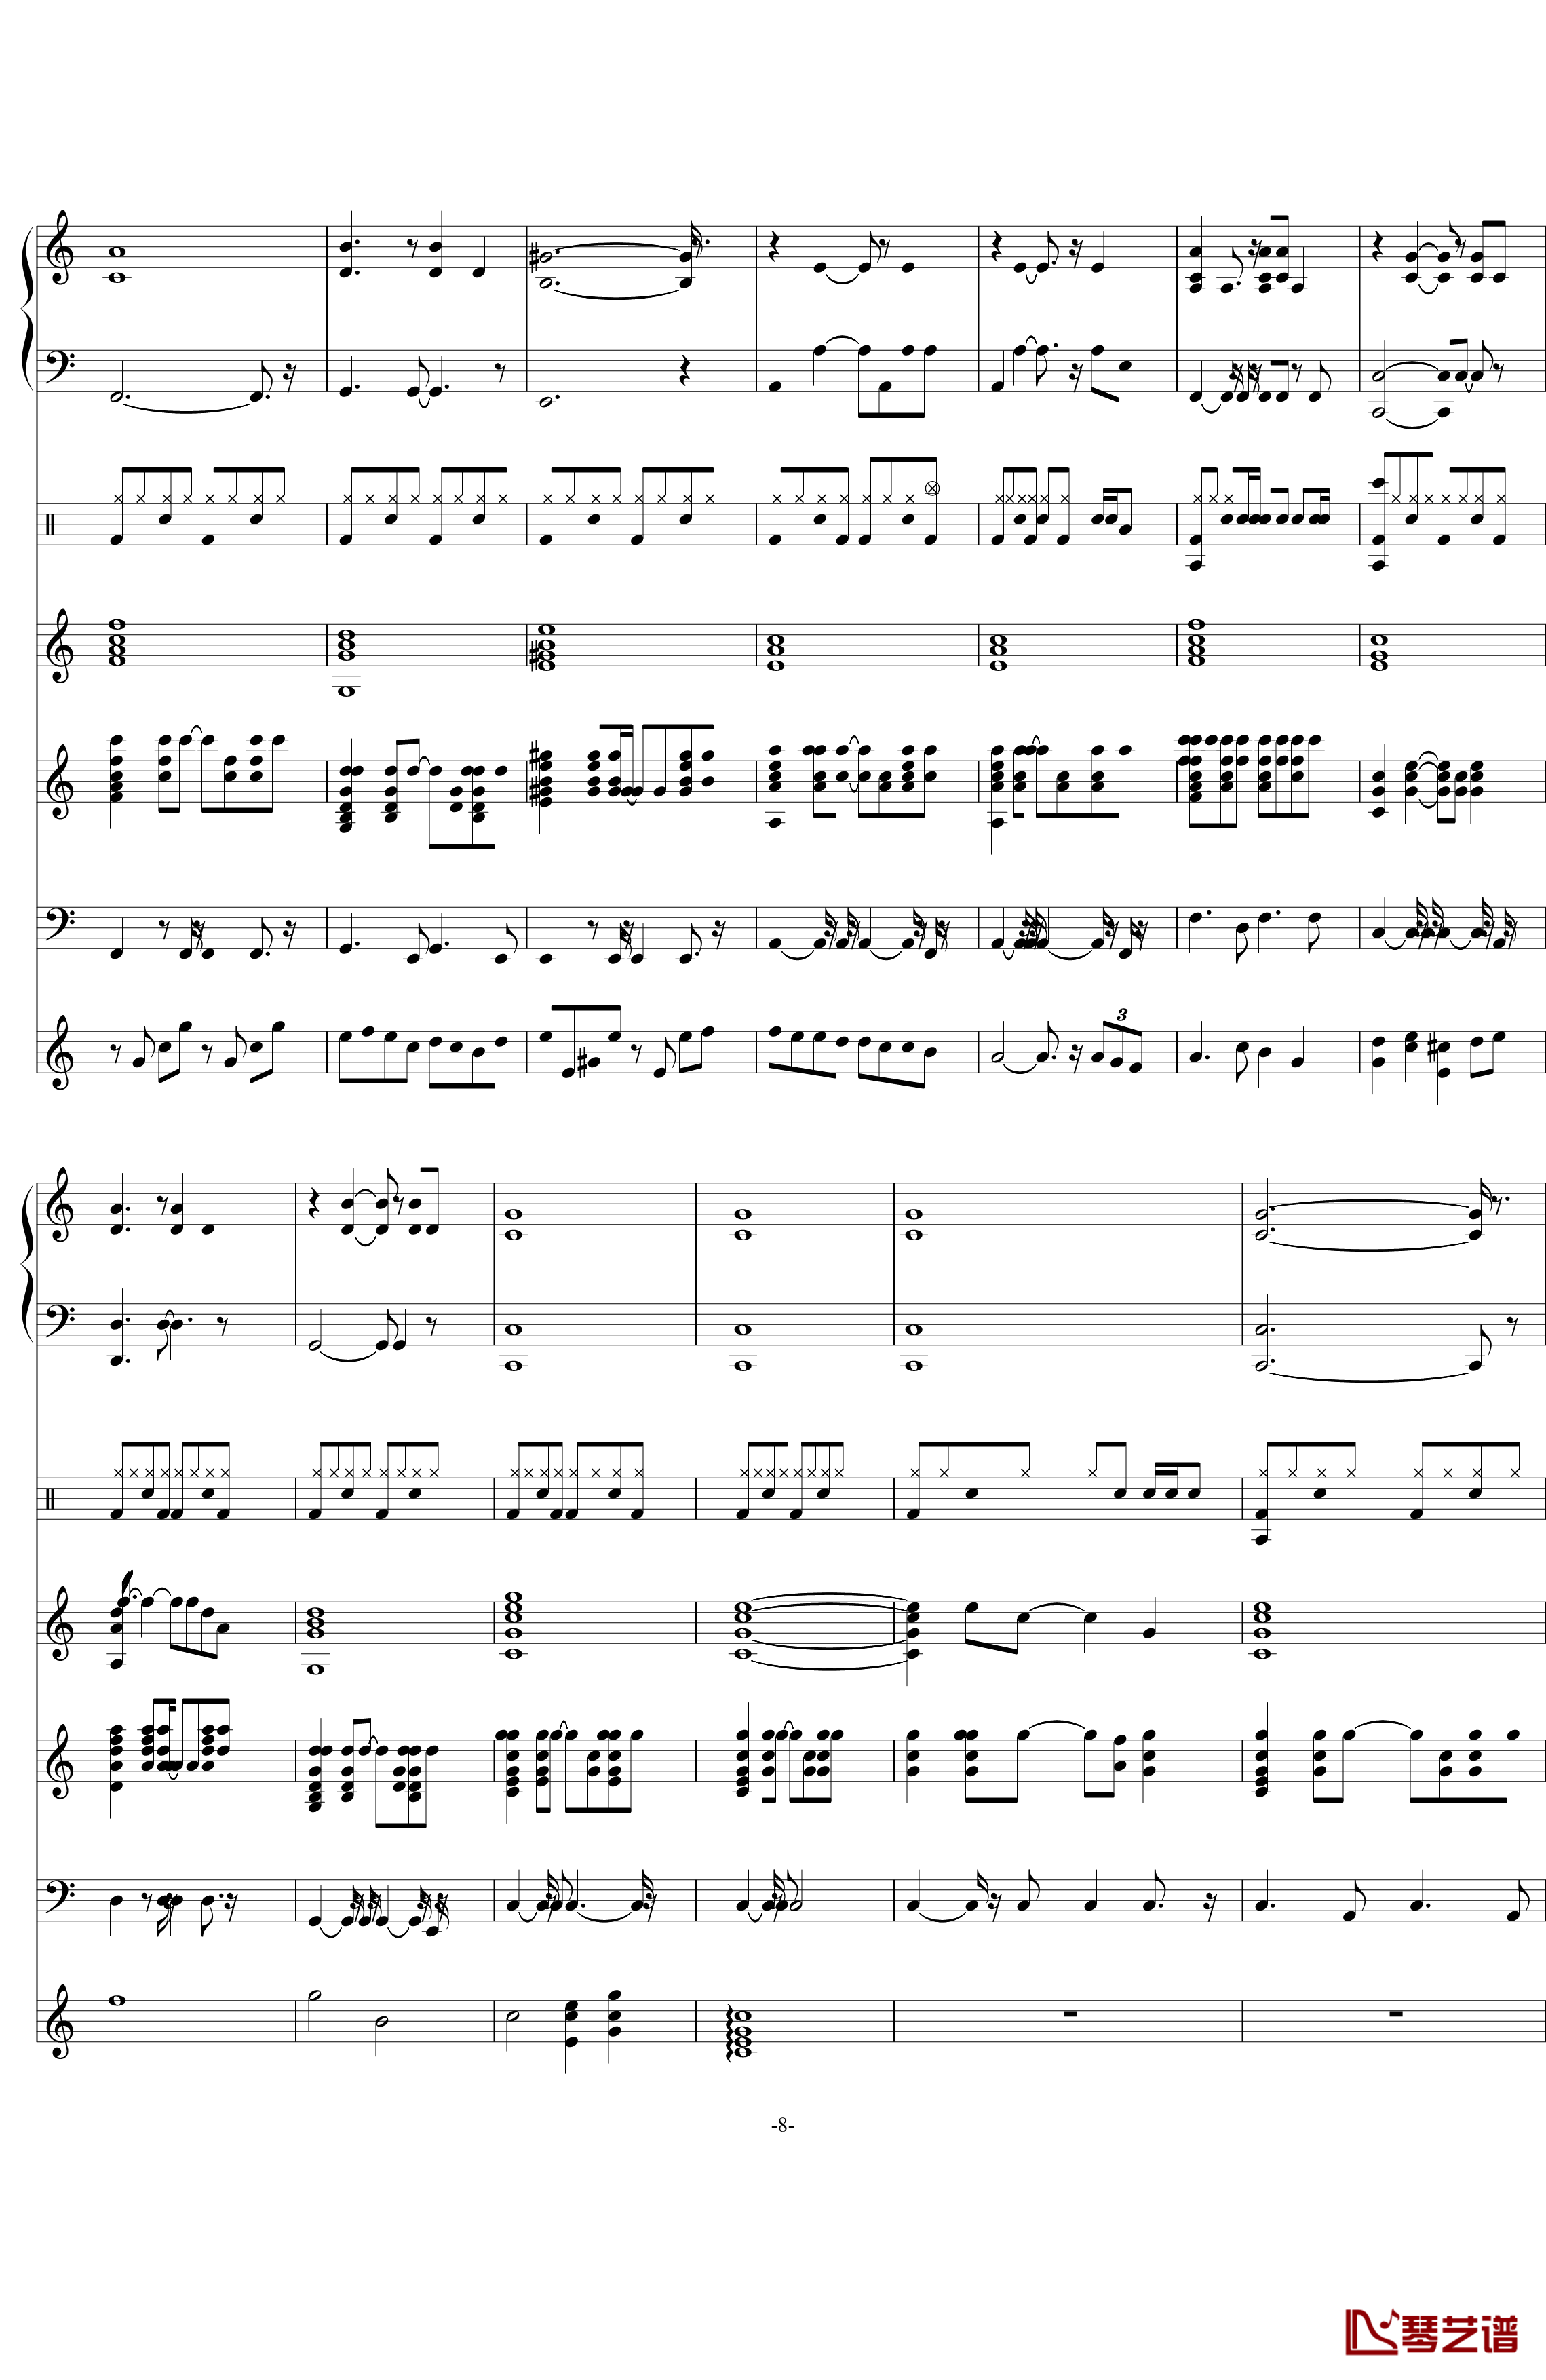 彩虹·梦钢琴谱-swenl-再版8